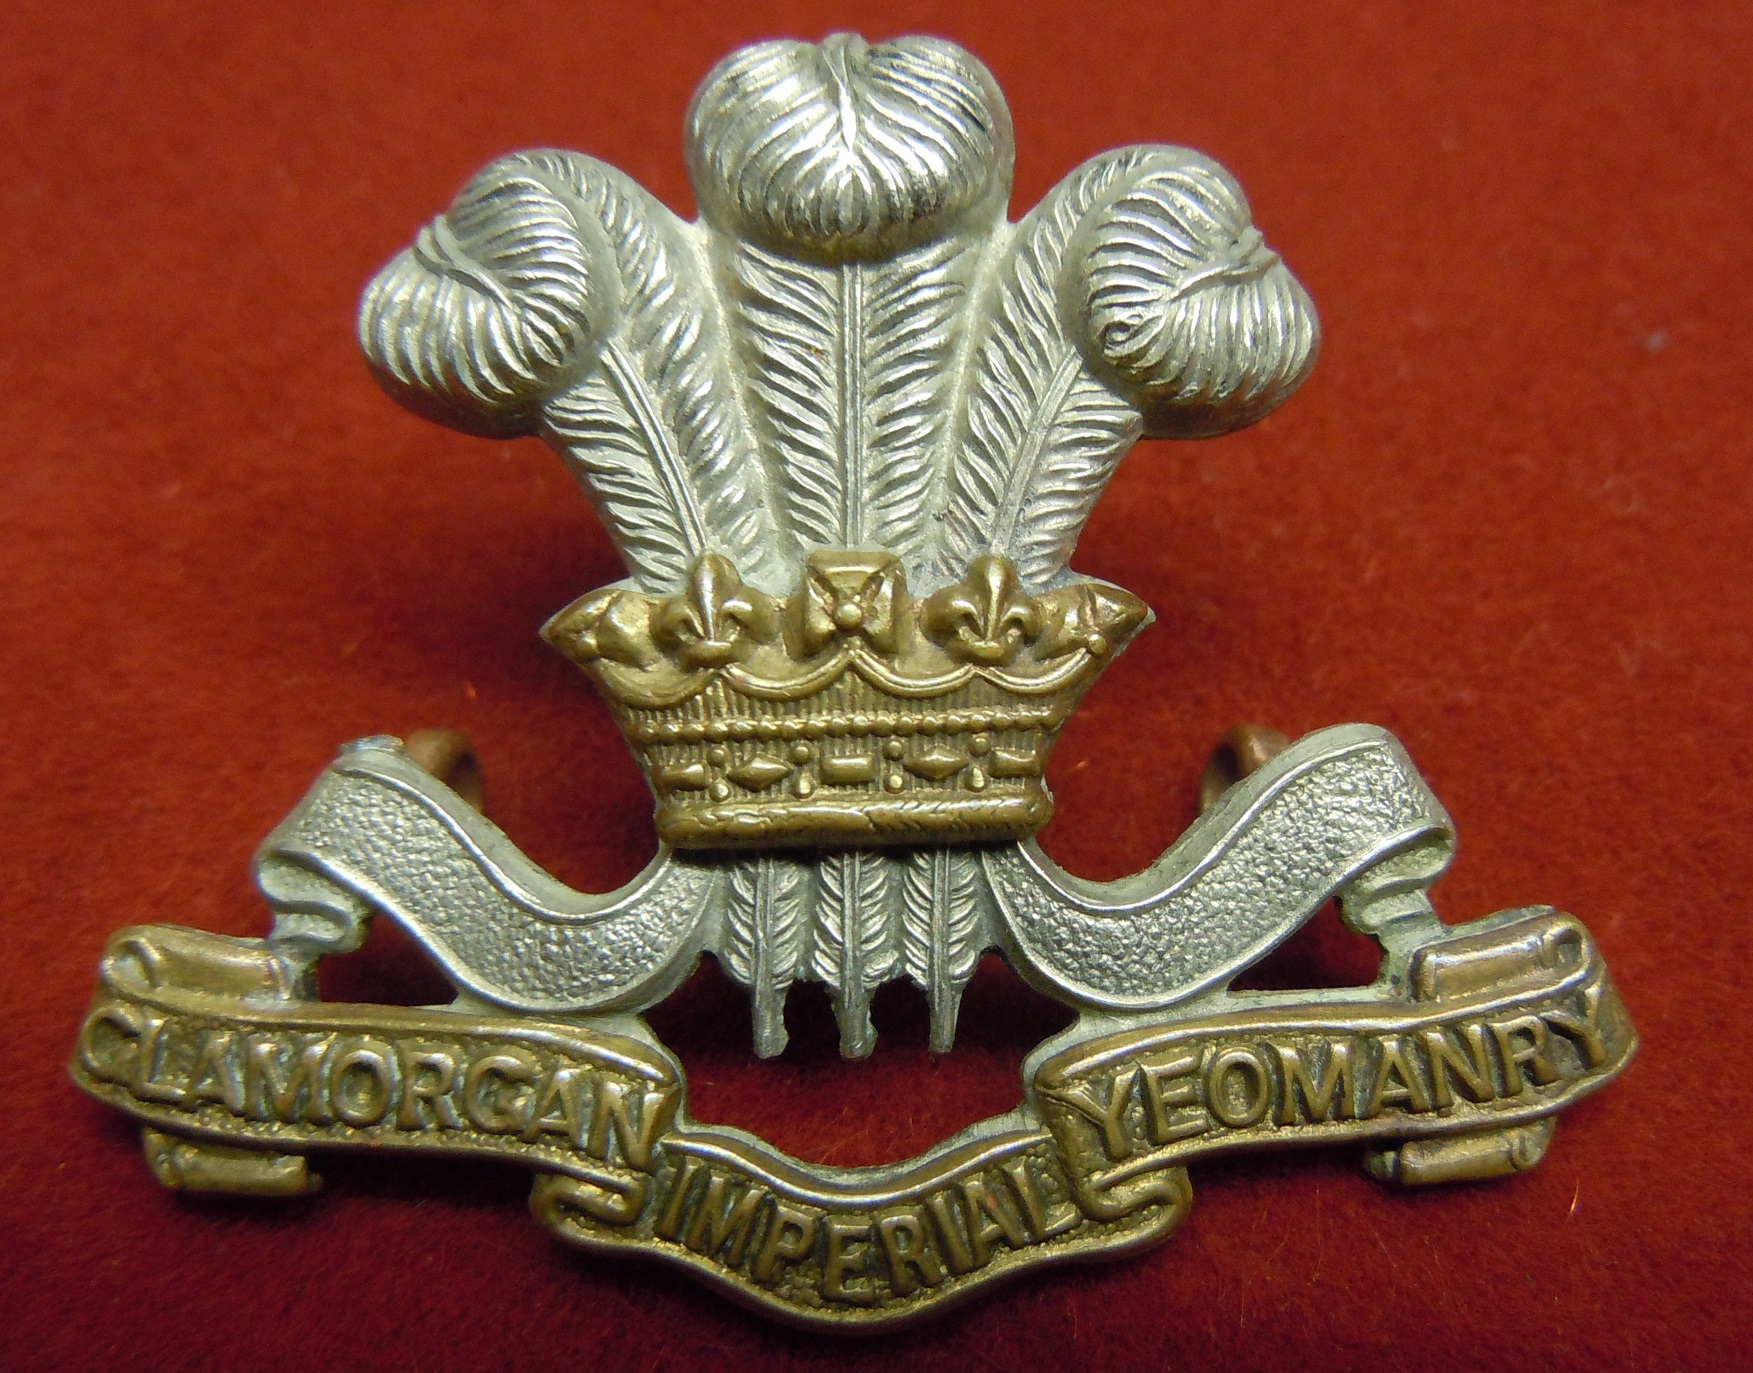 Glamorgan Imperial Yeomanry Cap badge (Bi Metal) GVF